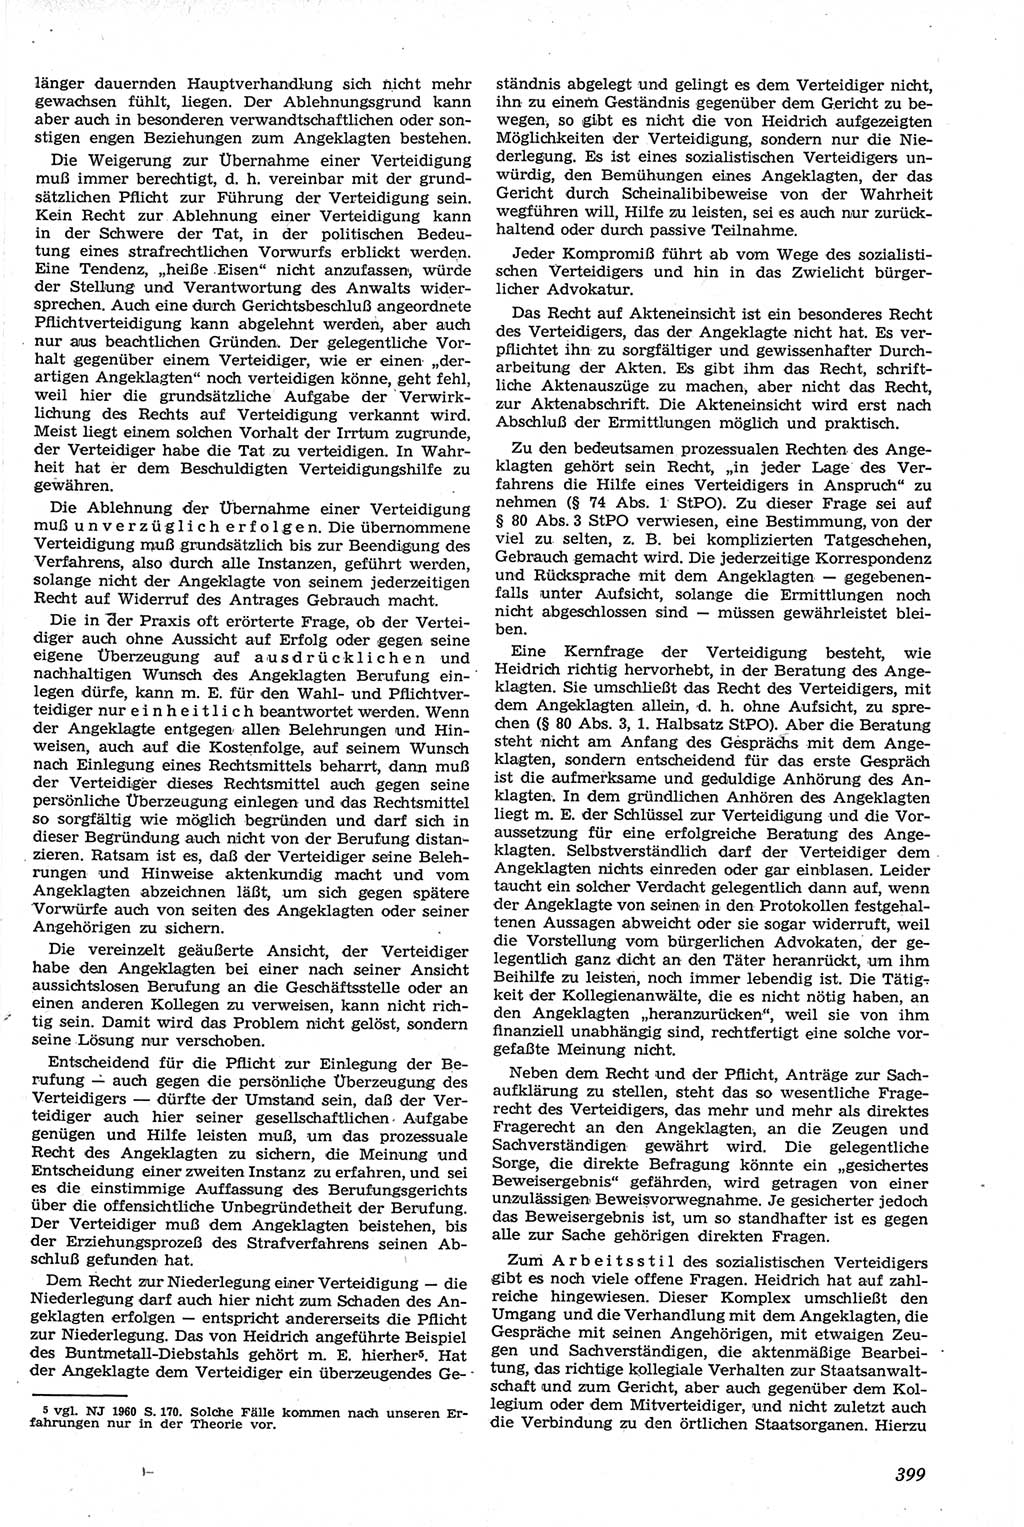 Neue Justiz (NJ), Zeitschrift für Recht und Rechtswissenschaft [Deutsche Demokratische Republik (DDR)], 14. Jahrgang 1960, Seite 399 (NJ DDR 1960, S. 399)